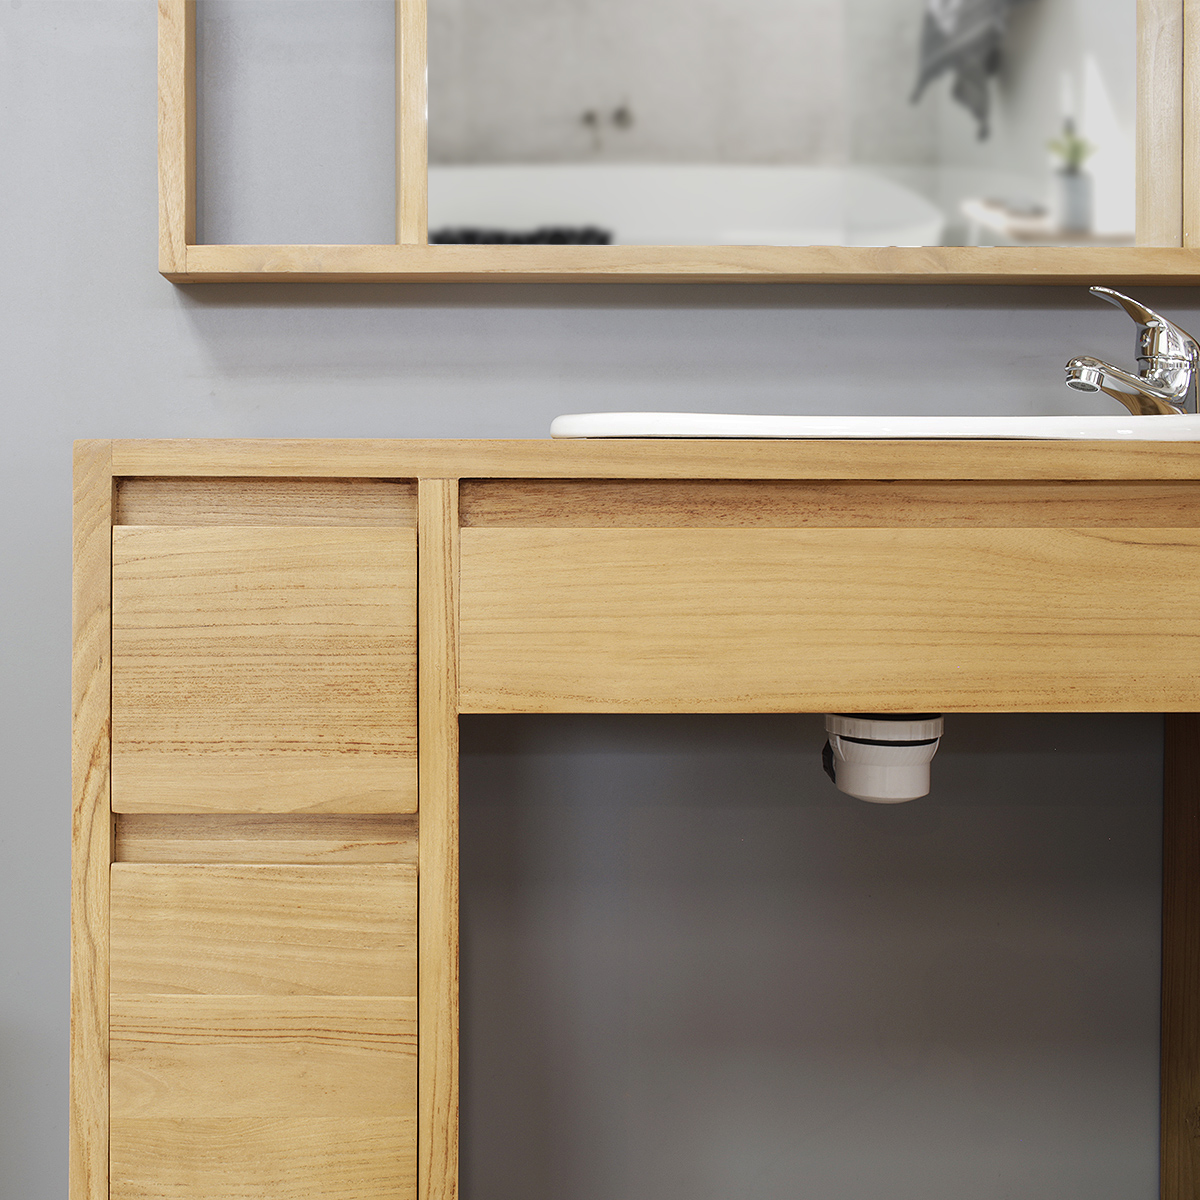 Focus sur le design du meuble salle de bain PMR en teck, magasin meubles Brest